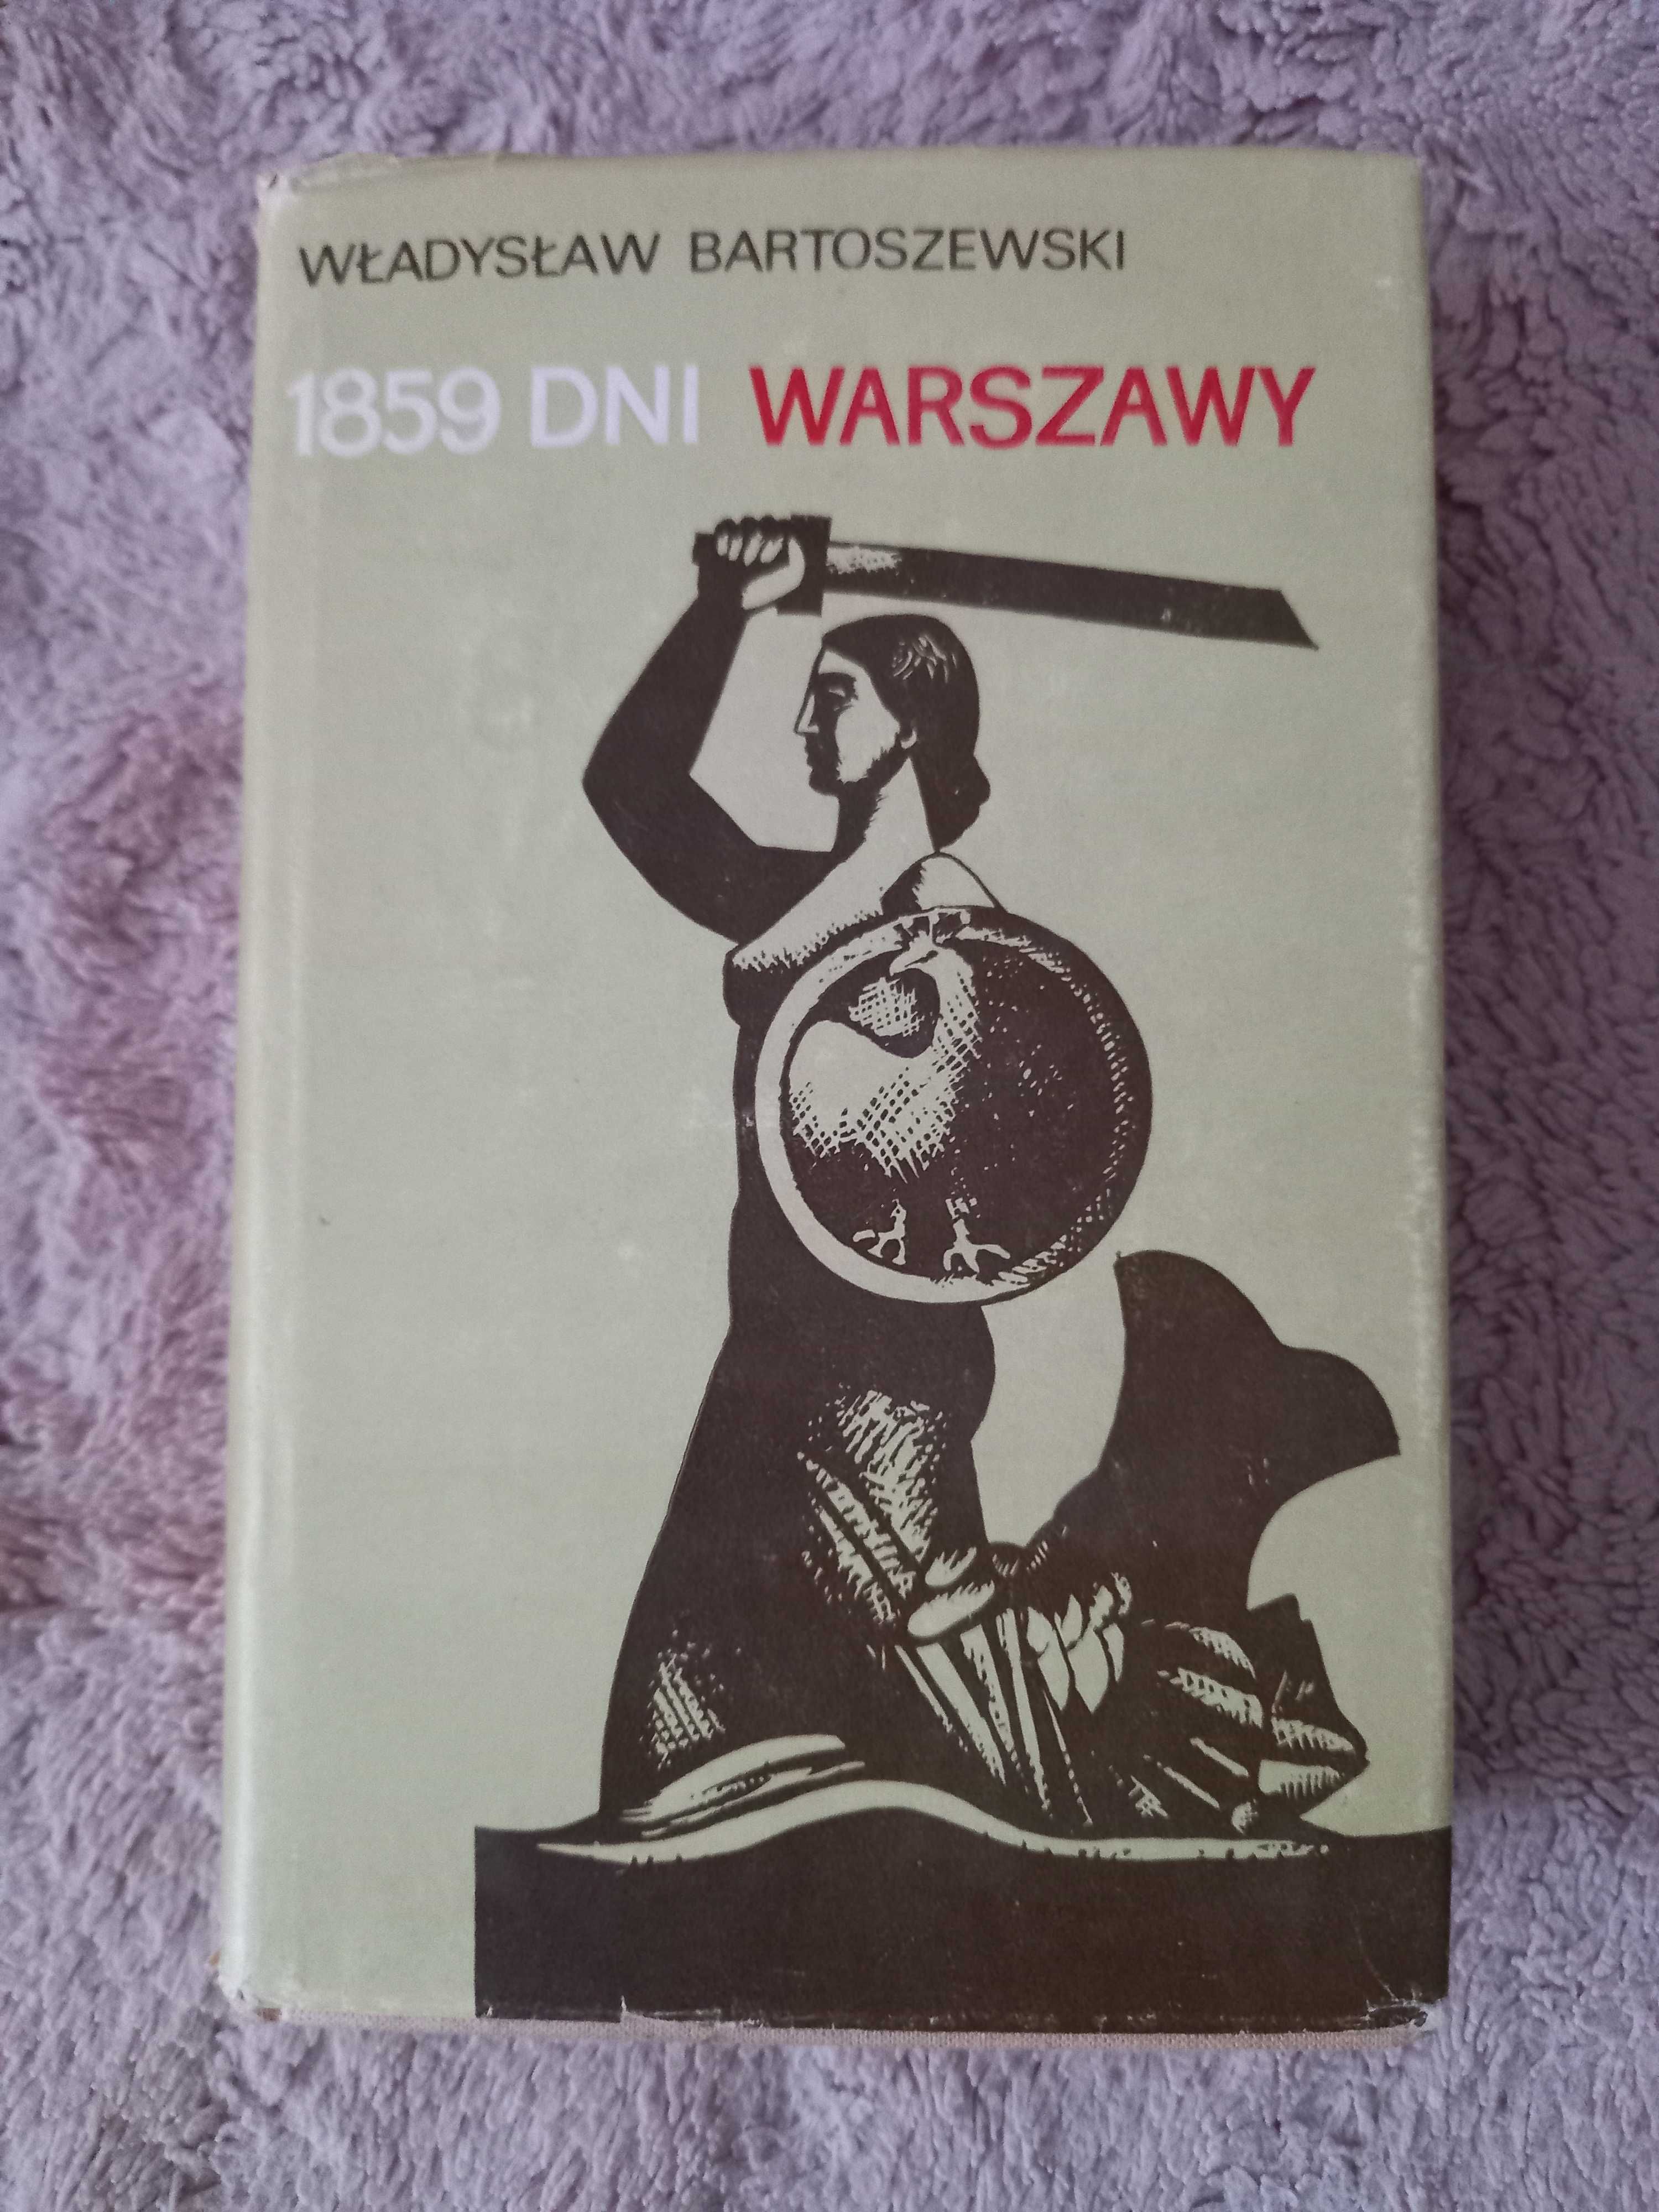 "1859 dni Warszawy", Władysław Bartoszewski